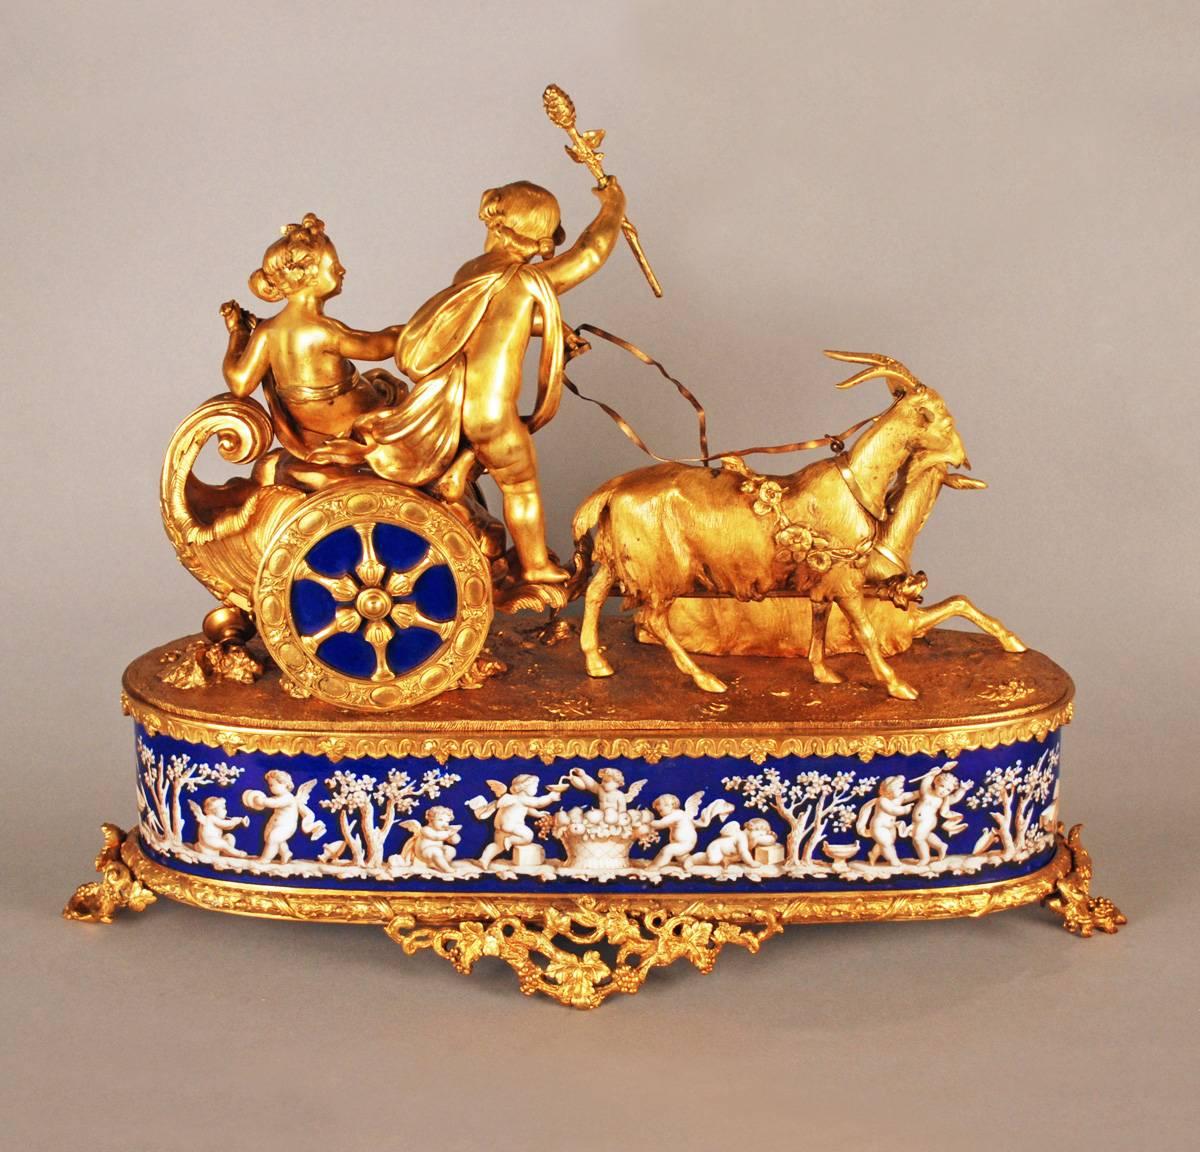 Étonnante et très rare horloge française en bronze doré du XIXe siècle, surmontée de deux chérubins finement travaillés chevauchant un char tiré par une paire de chèvres merveilleusement détaillées.

Le cadran bleu de l'horloge porte le nom